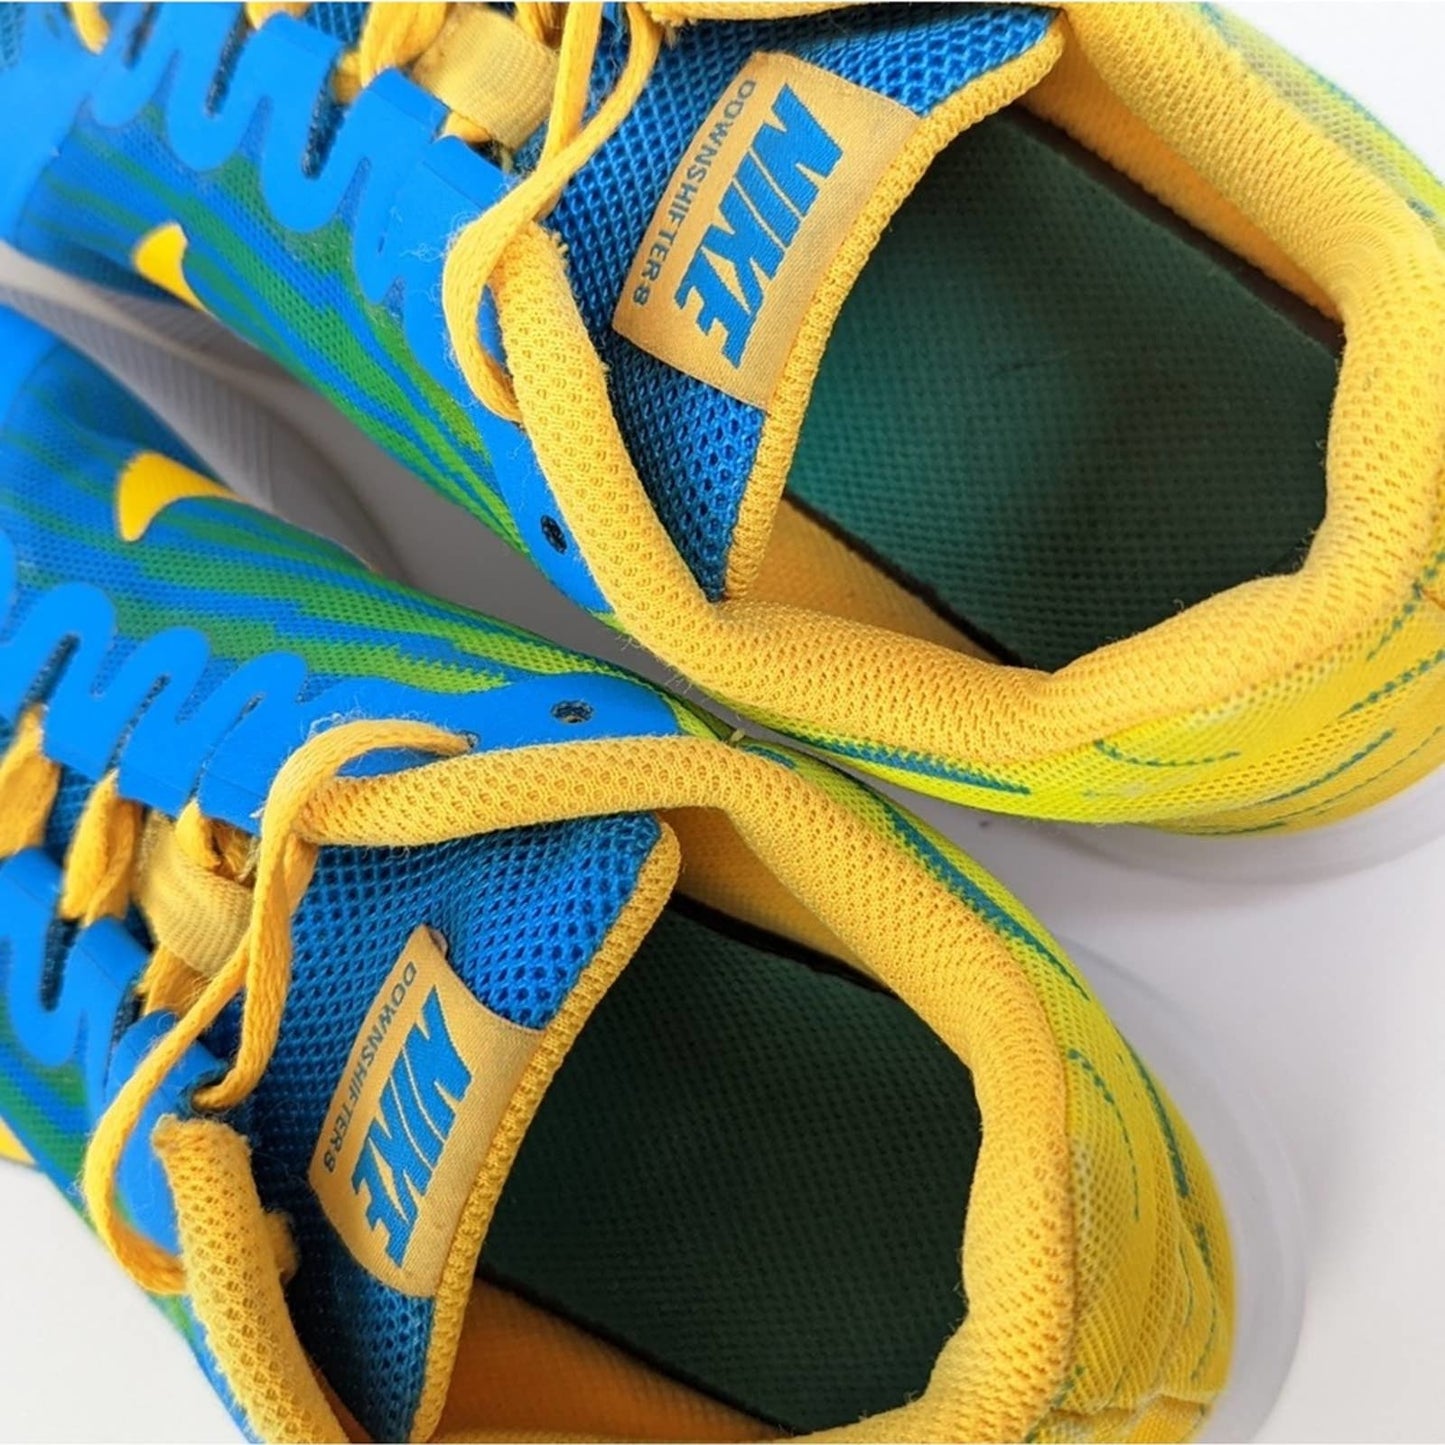 Nike Downshifter Fade Running Shoes - 6.5